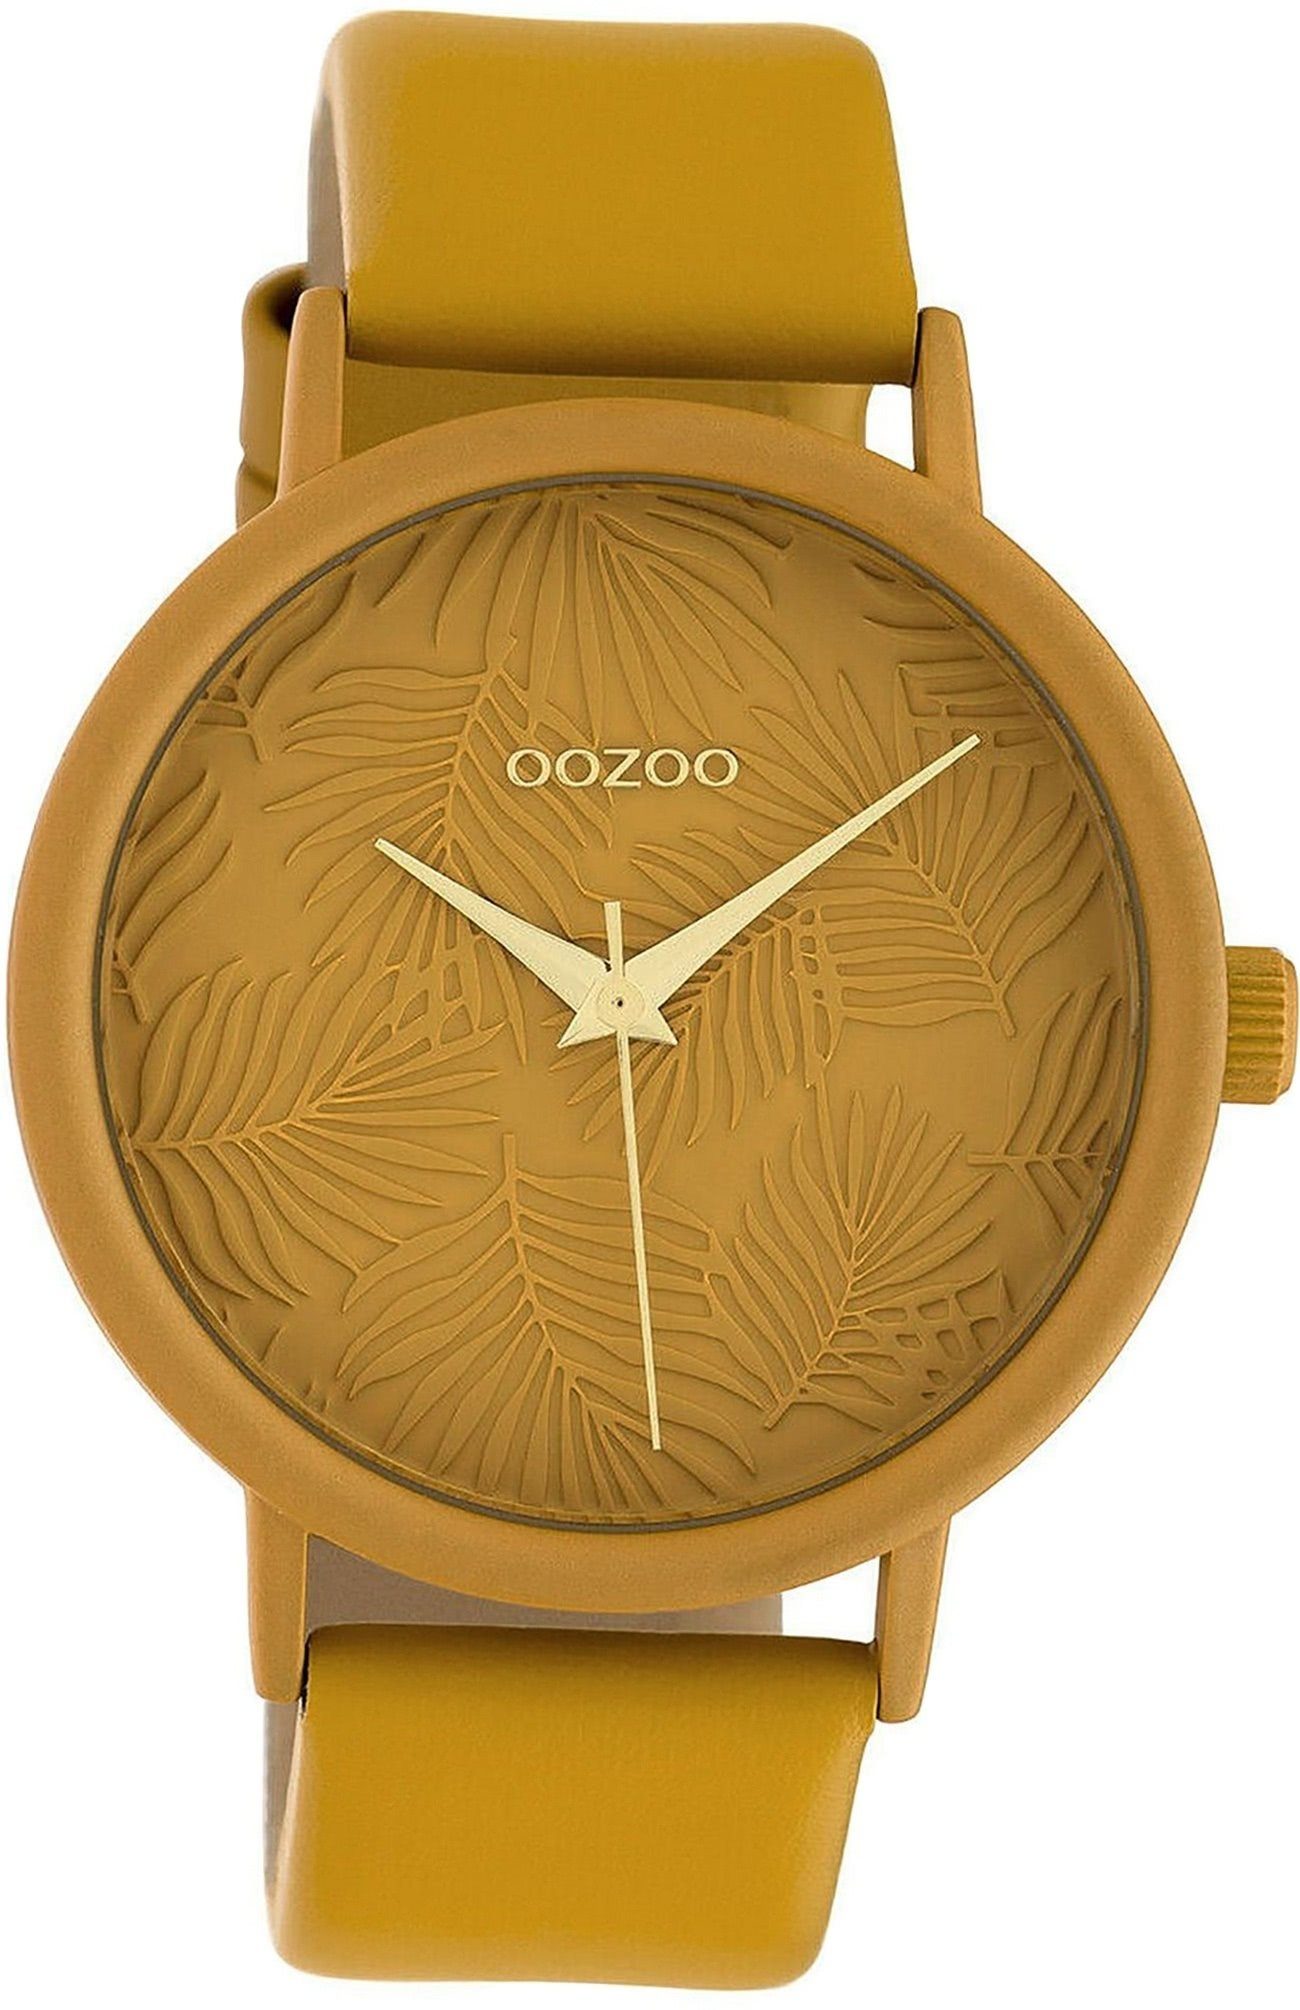 OOZOO Quarzuhr Oozoo Leder Damen Uhr C10172 Analog, Damenuhr Lederarmband senfgelb, rundes Gehäuse, groß (ca. 42mm)